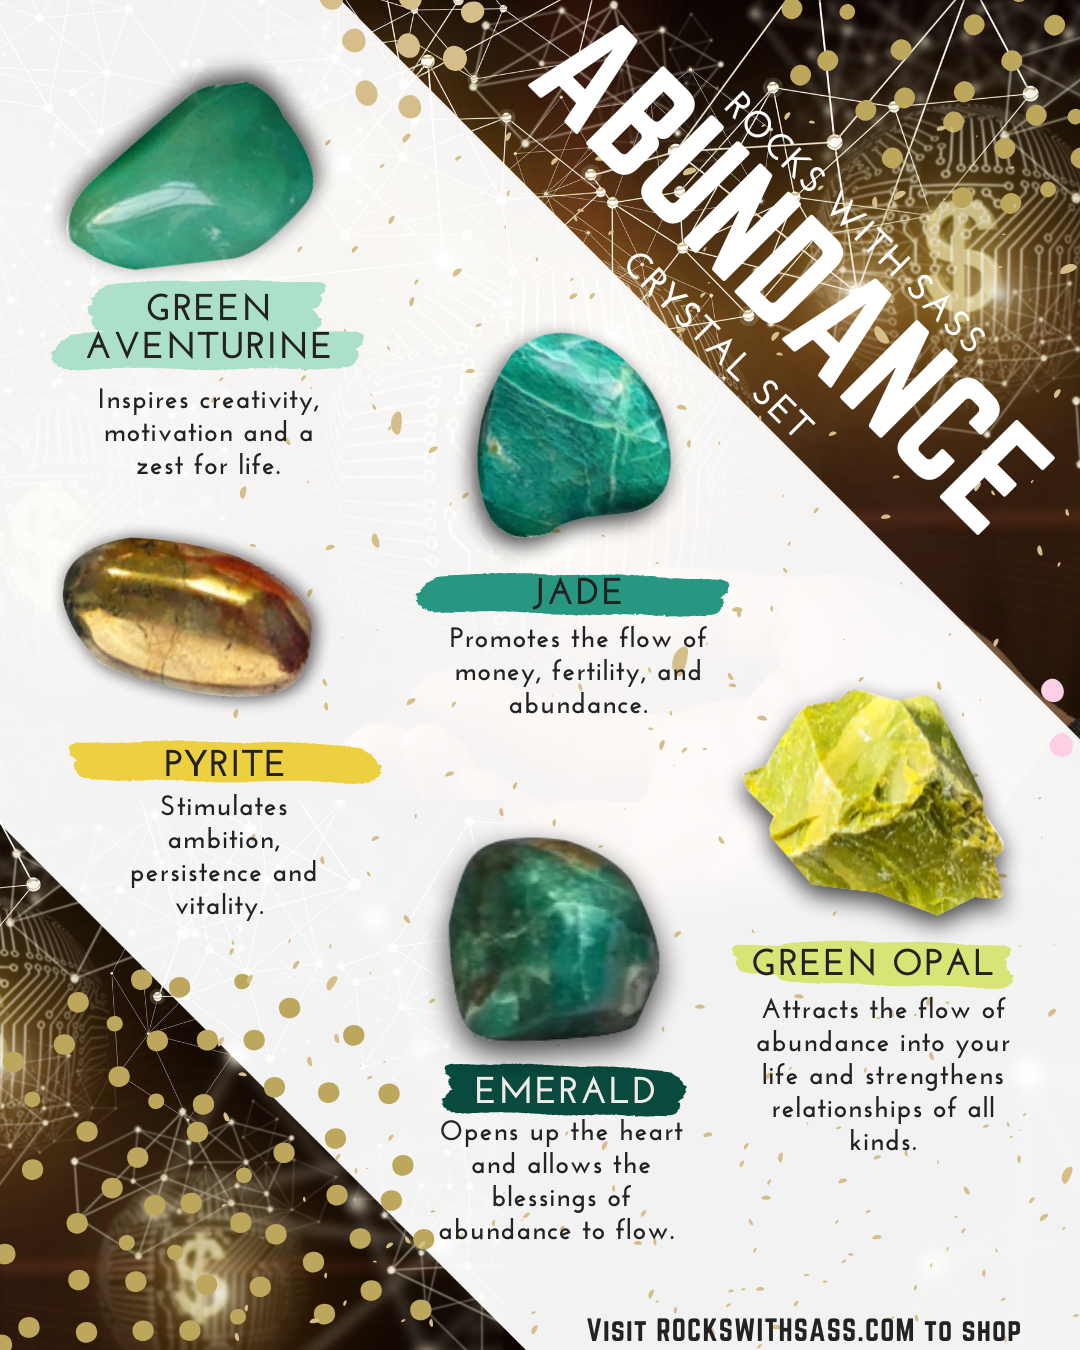 Abundance Crystal Set